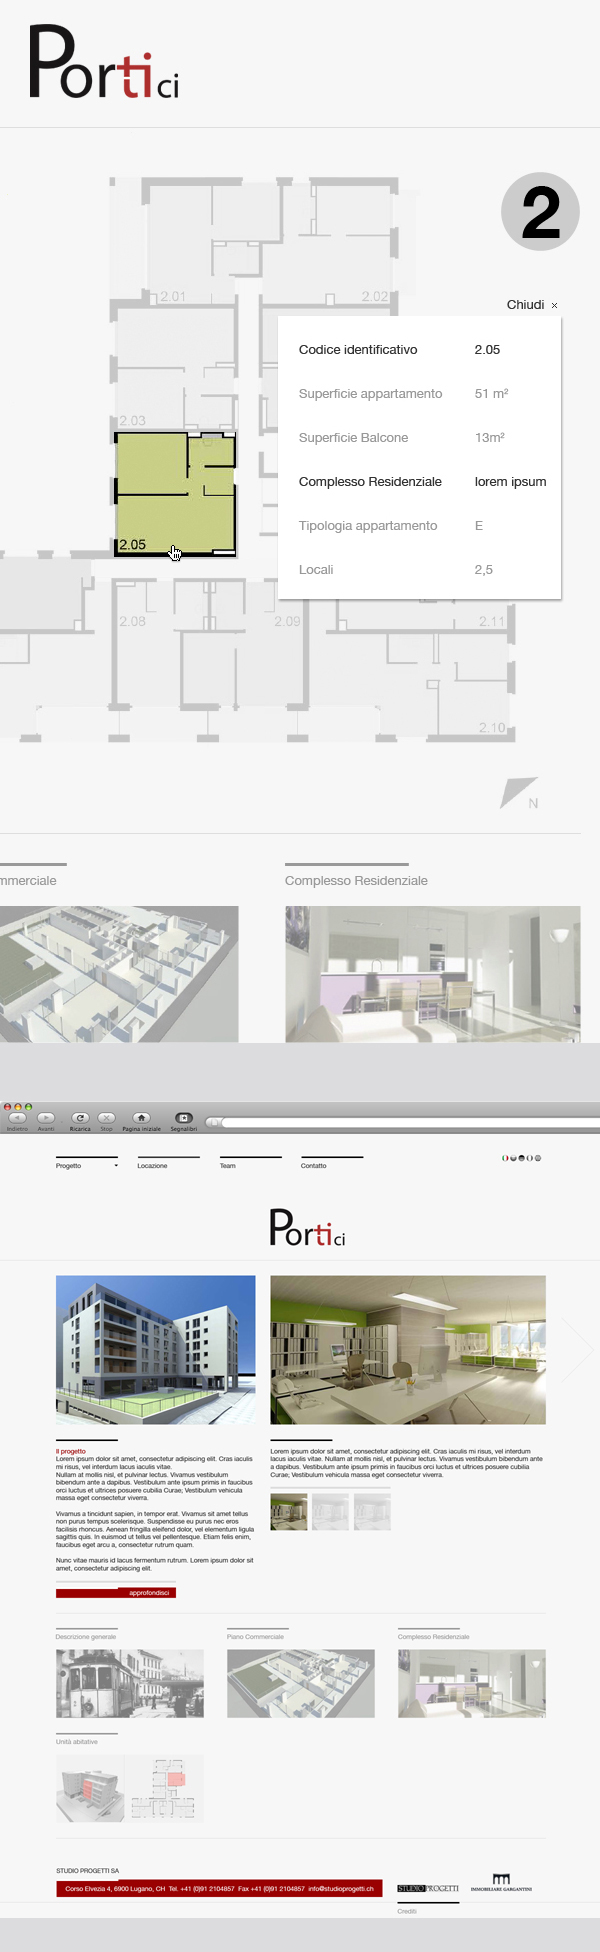 portici Webdesign Web graphic www.portici.ch immobiliare gargatini studio progetti